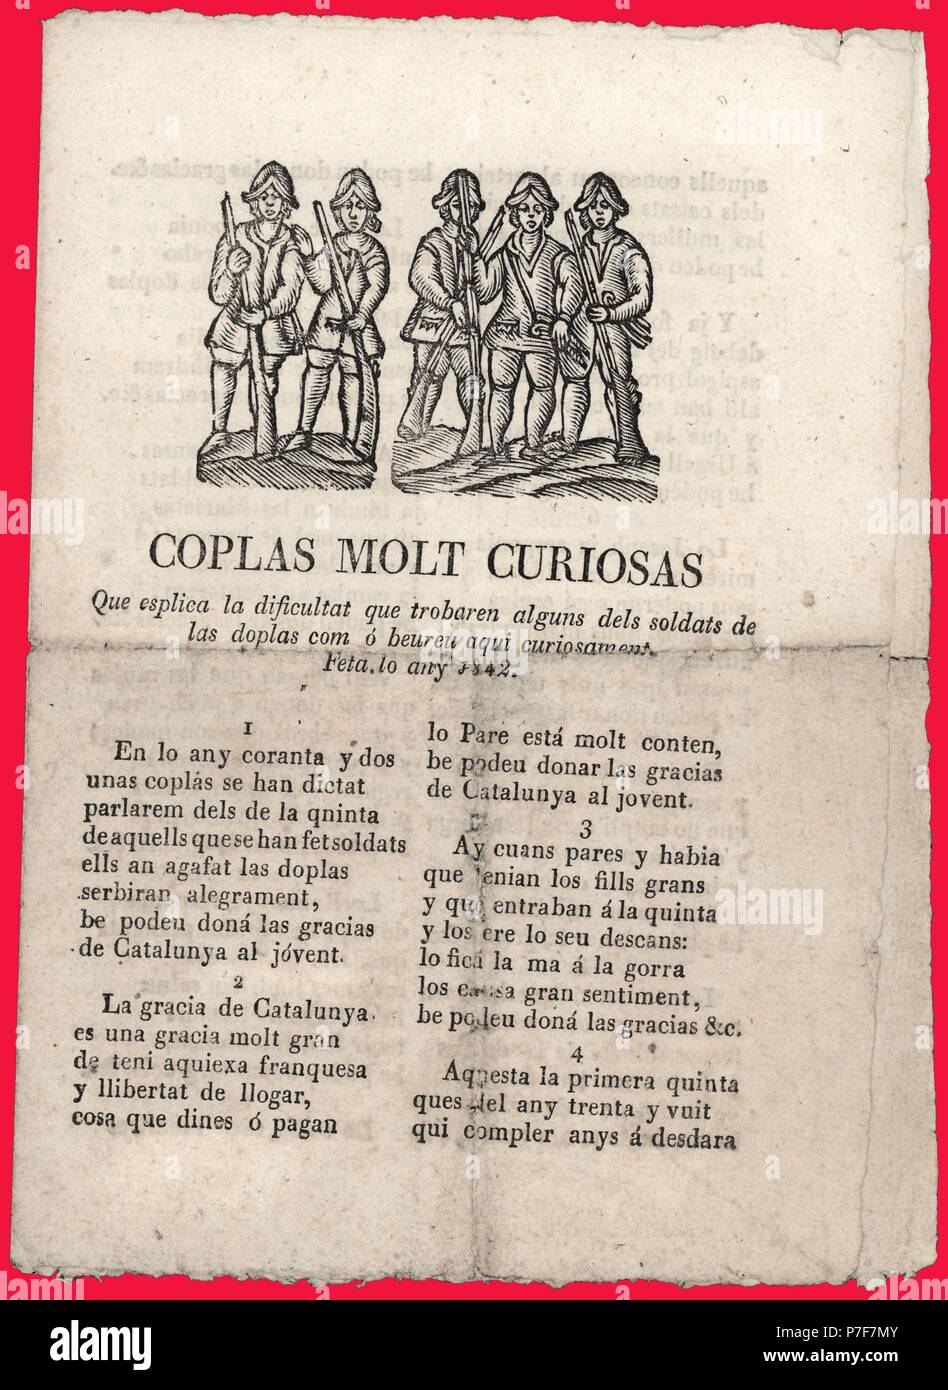 Literatura de cordel. Coplas que narran las dificultades militares de los soldados de las doplas. Barcelona, año 1842. Stock Photo